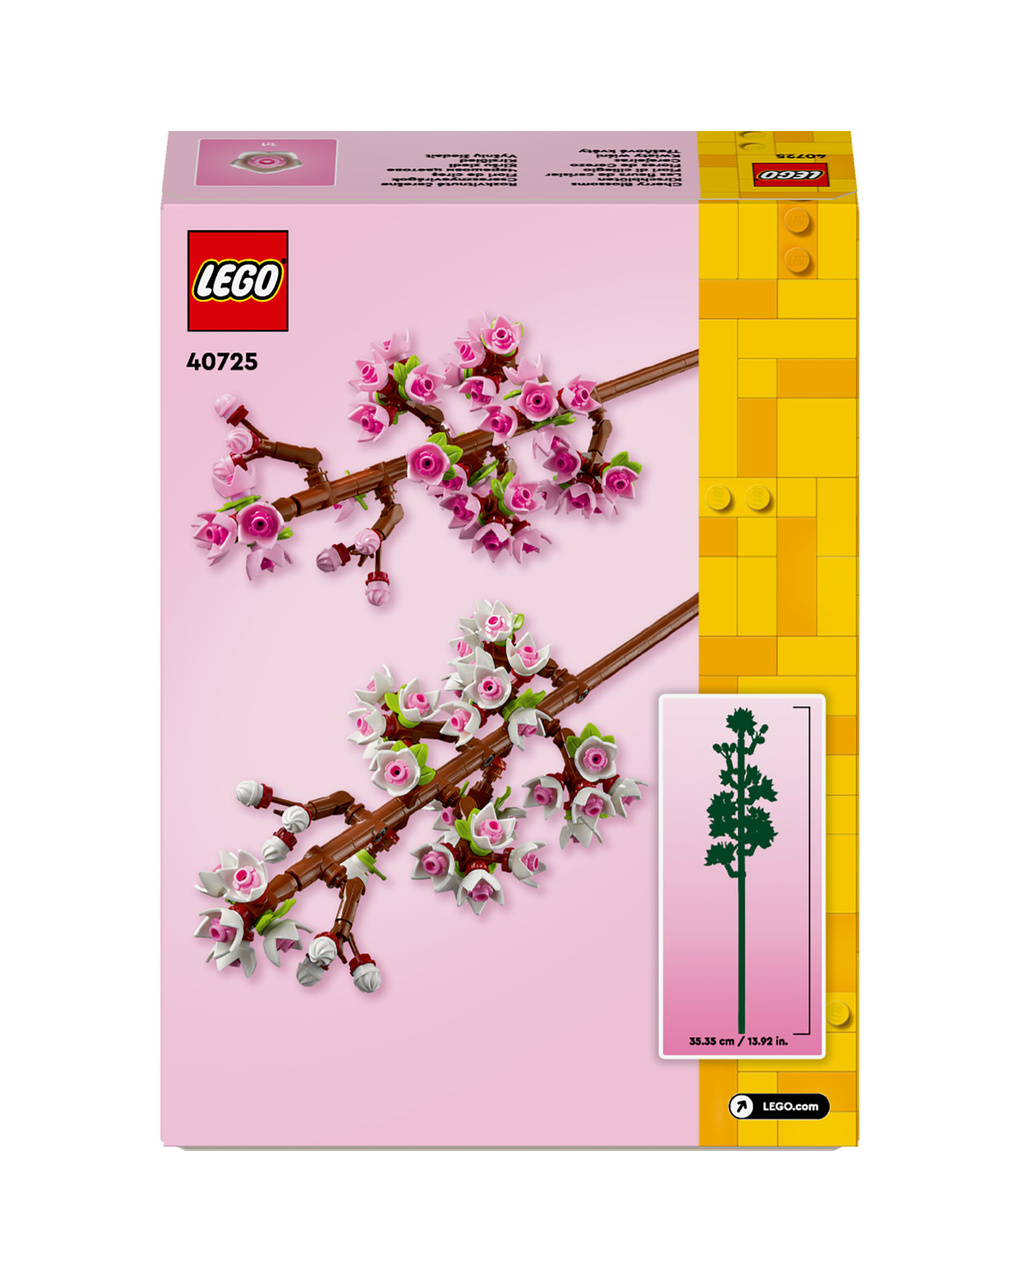 Fiori di ciliegio - 40725 - lego creator - LEGO Icons